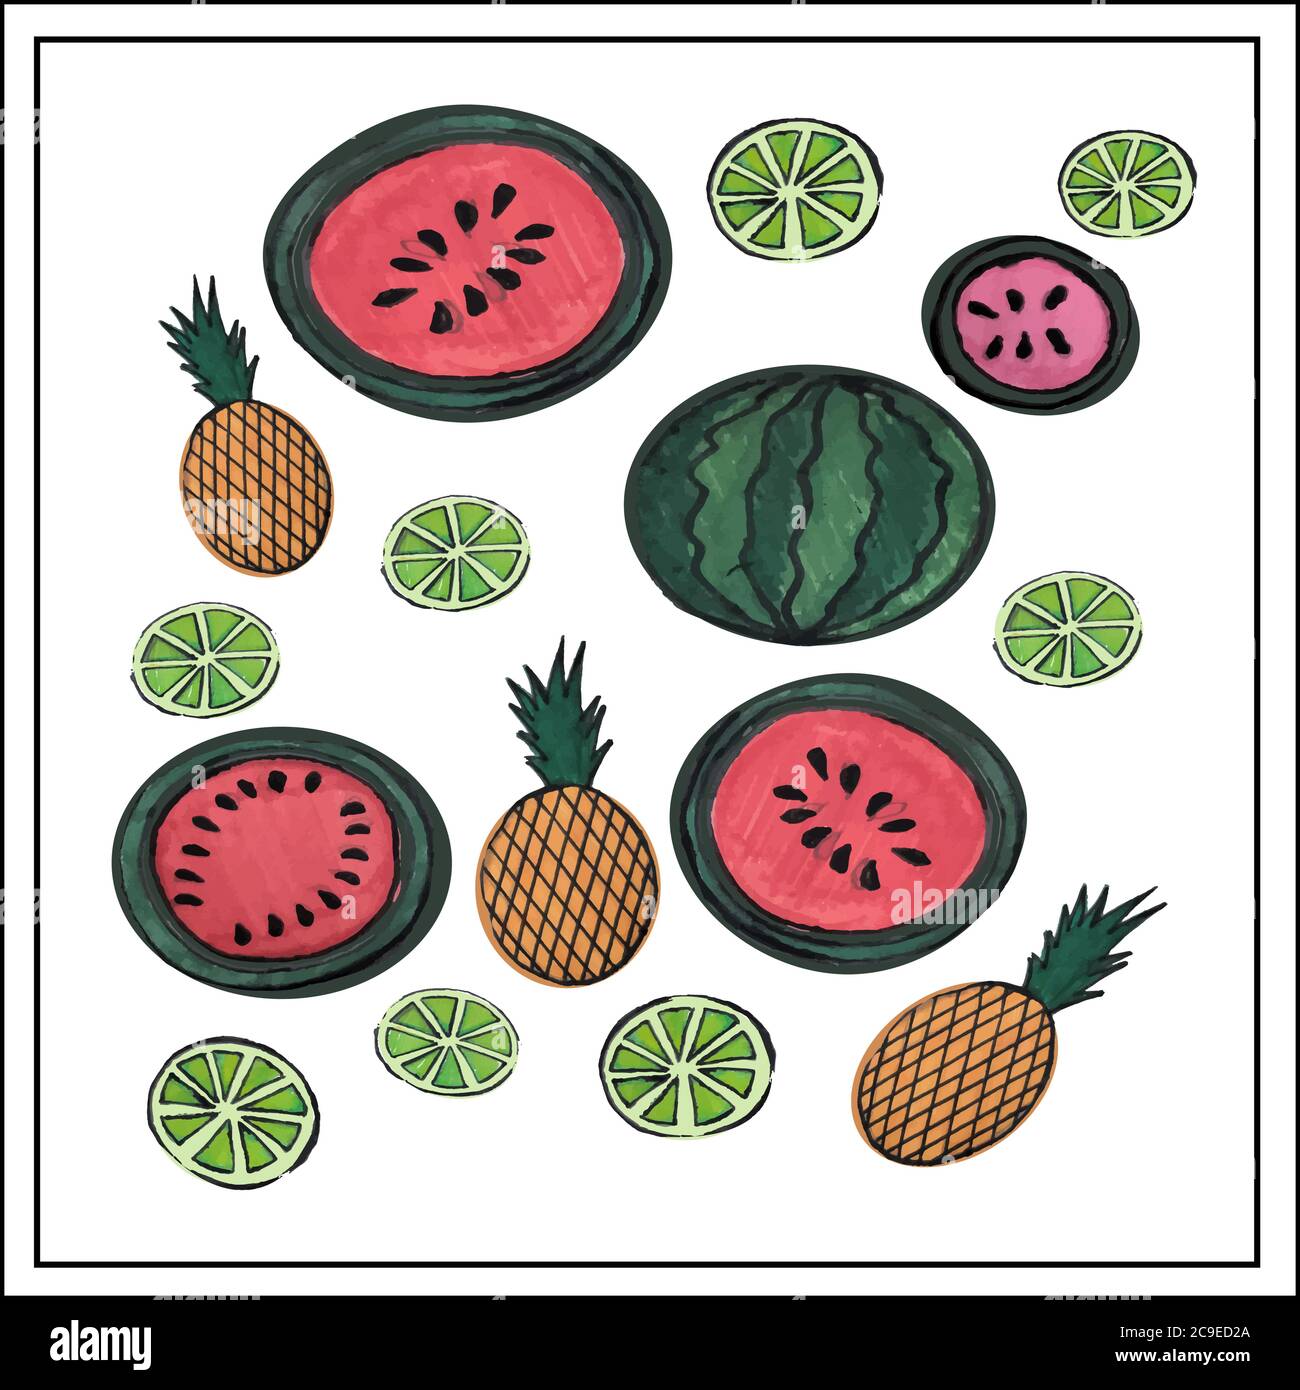 Aquarell Zeichnung der Früchte. Vektor-isoliertes Bild. Sie können die Größe ändern. Rahmen, Muster. Wassermelonen, Kokosnüsse, Zitronen. Stock Vektor